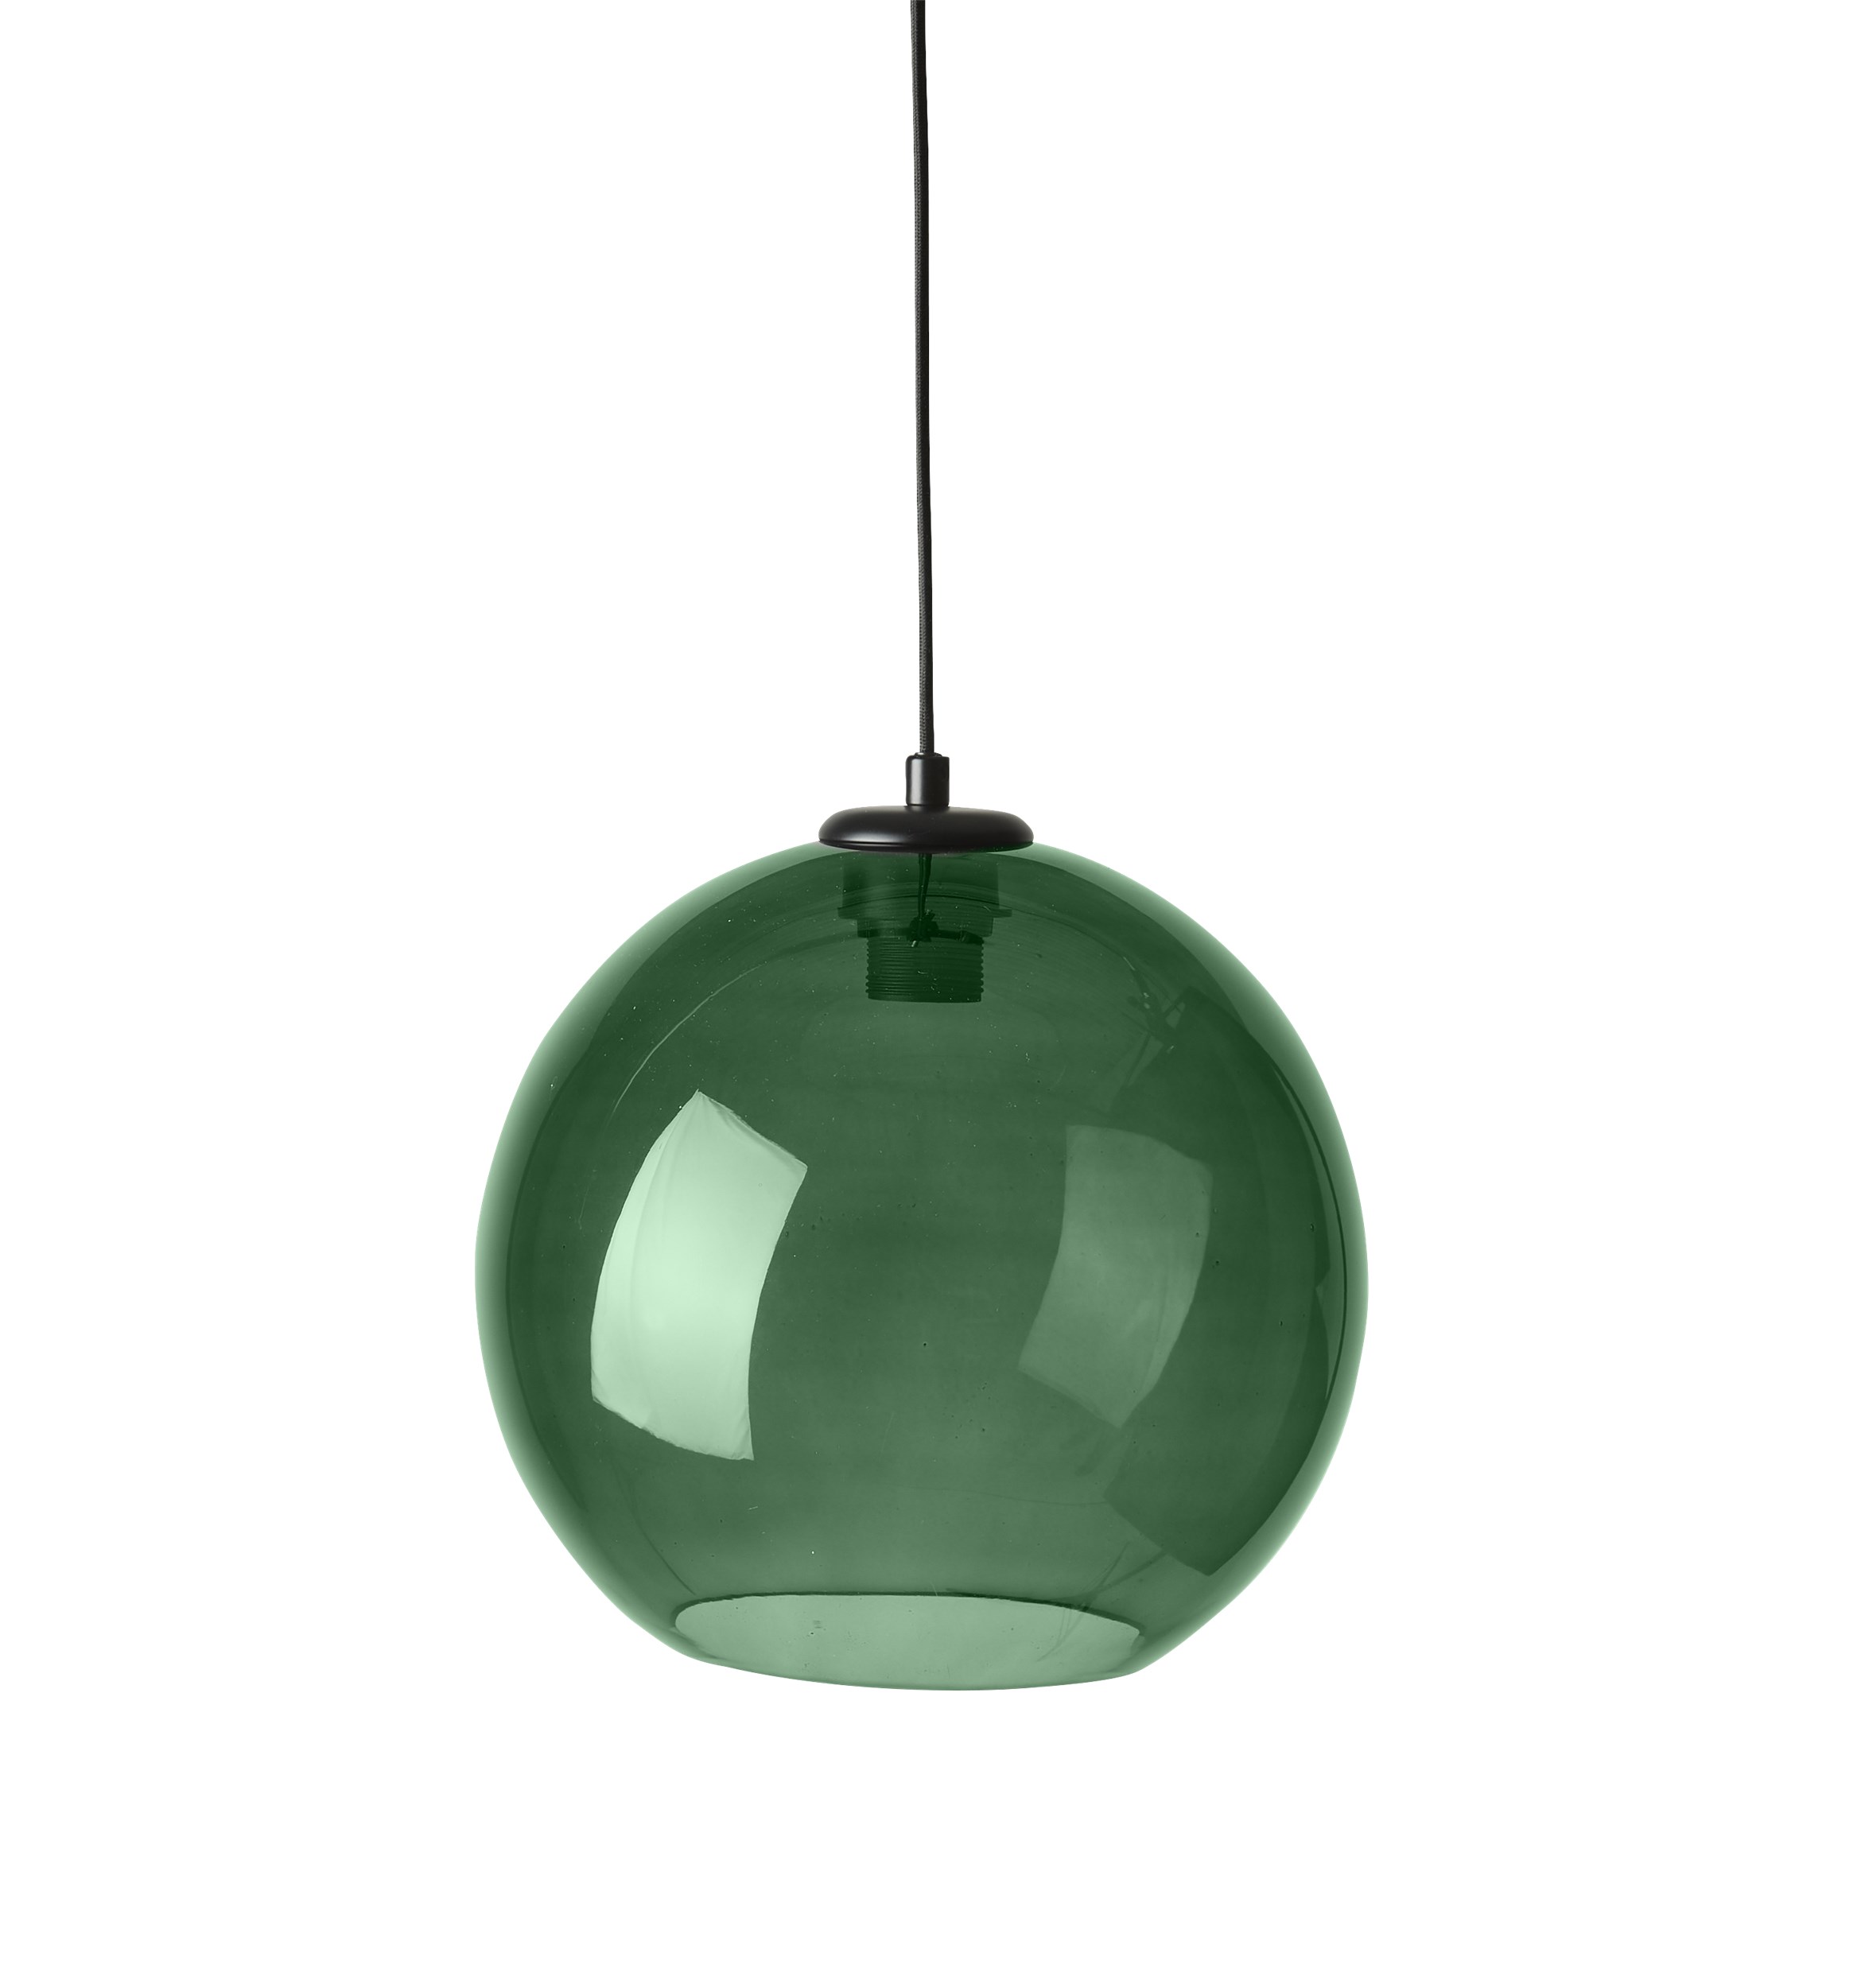 Sona pendellampa 30 cm - Grön glasskärm, svart ovandel i metall och svart textilsladd